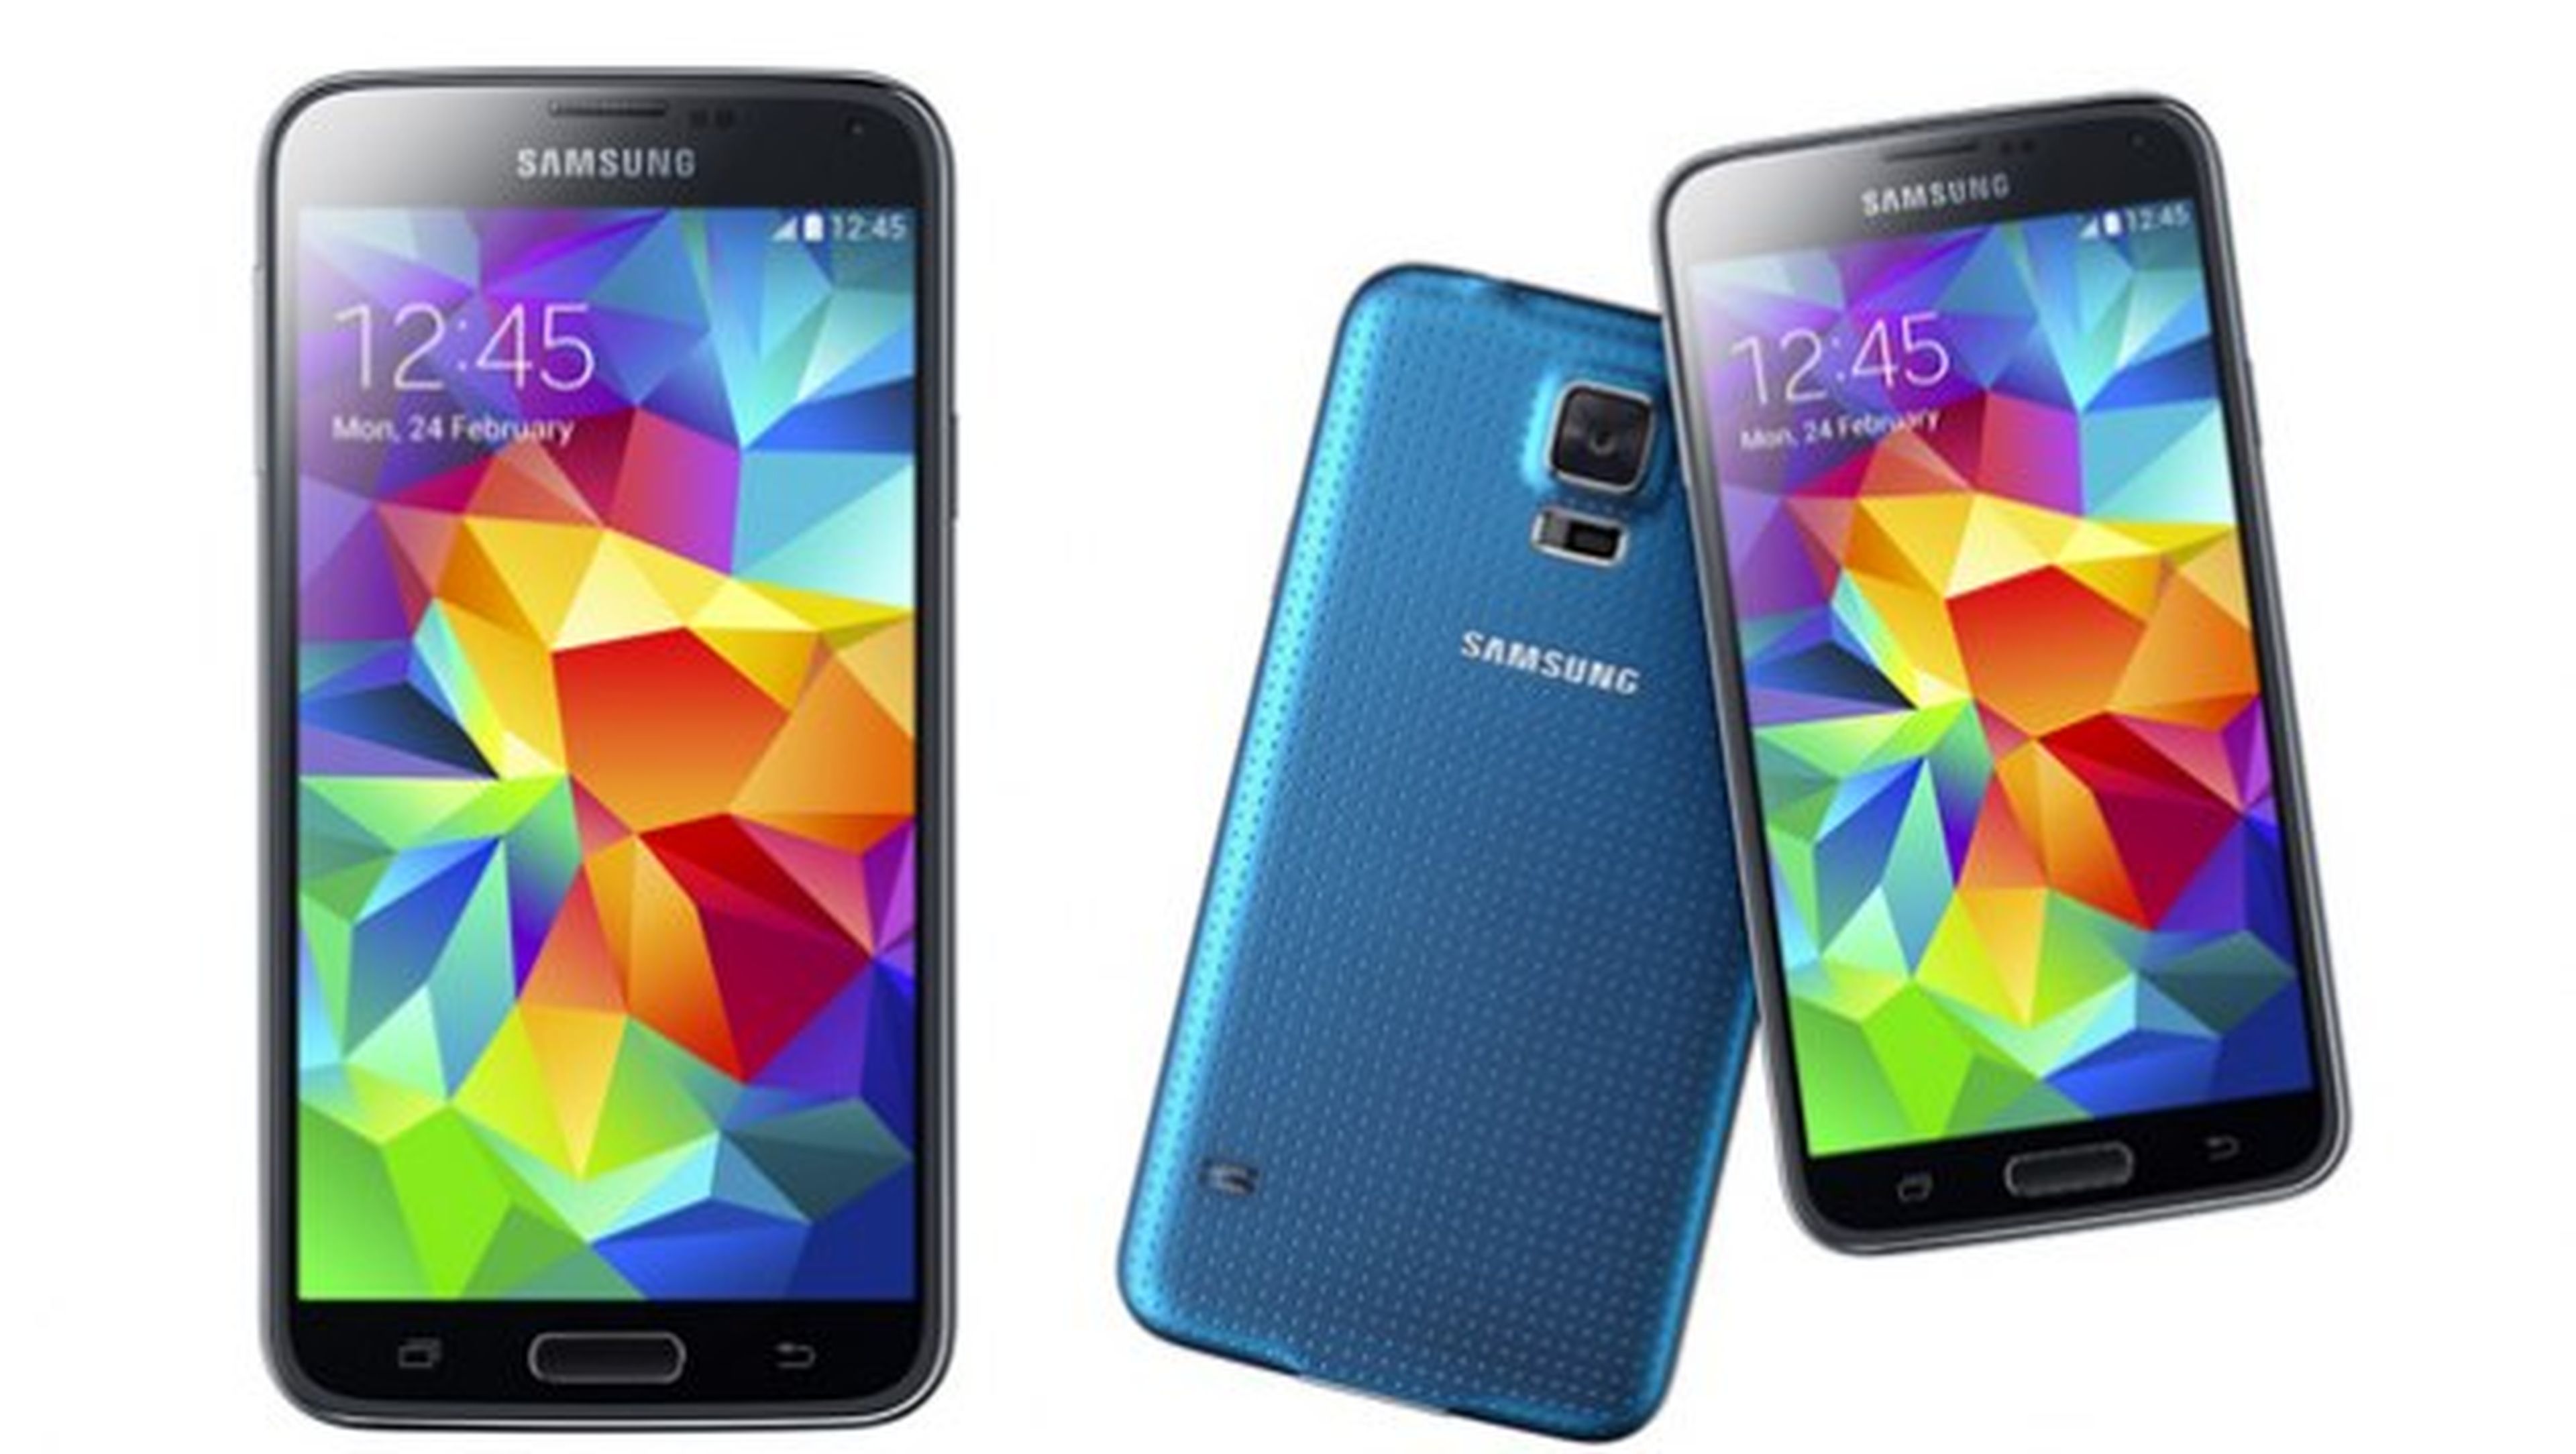 Samsung Galaxy S5 contra Xperia Z2. ¿Qué móvil es mejor?